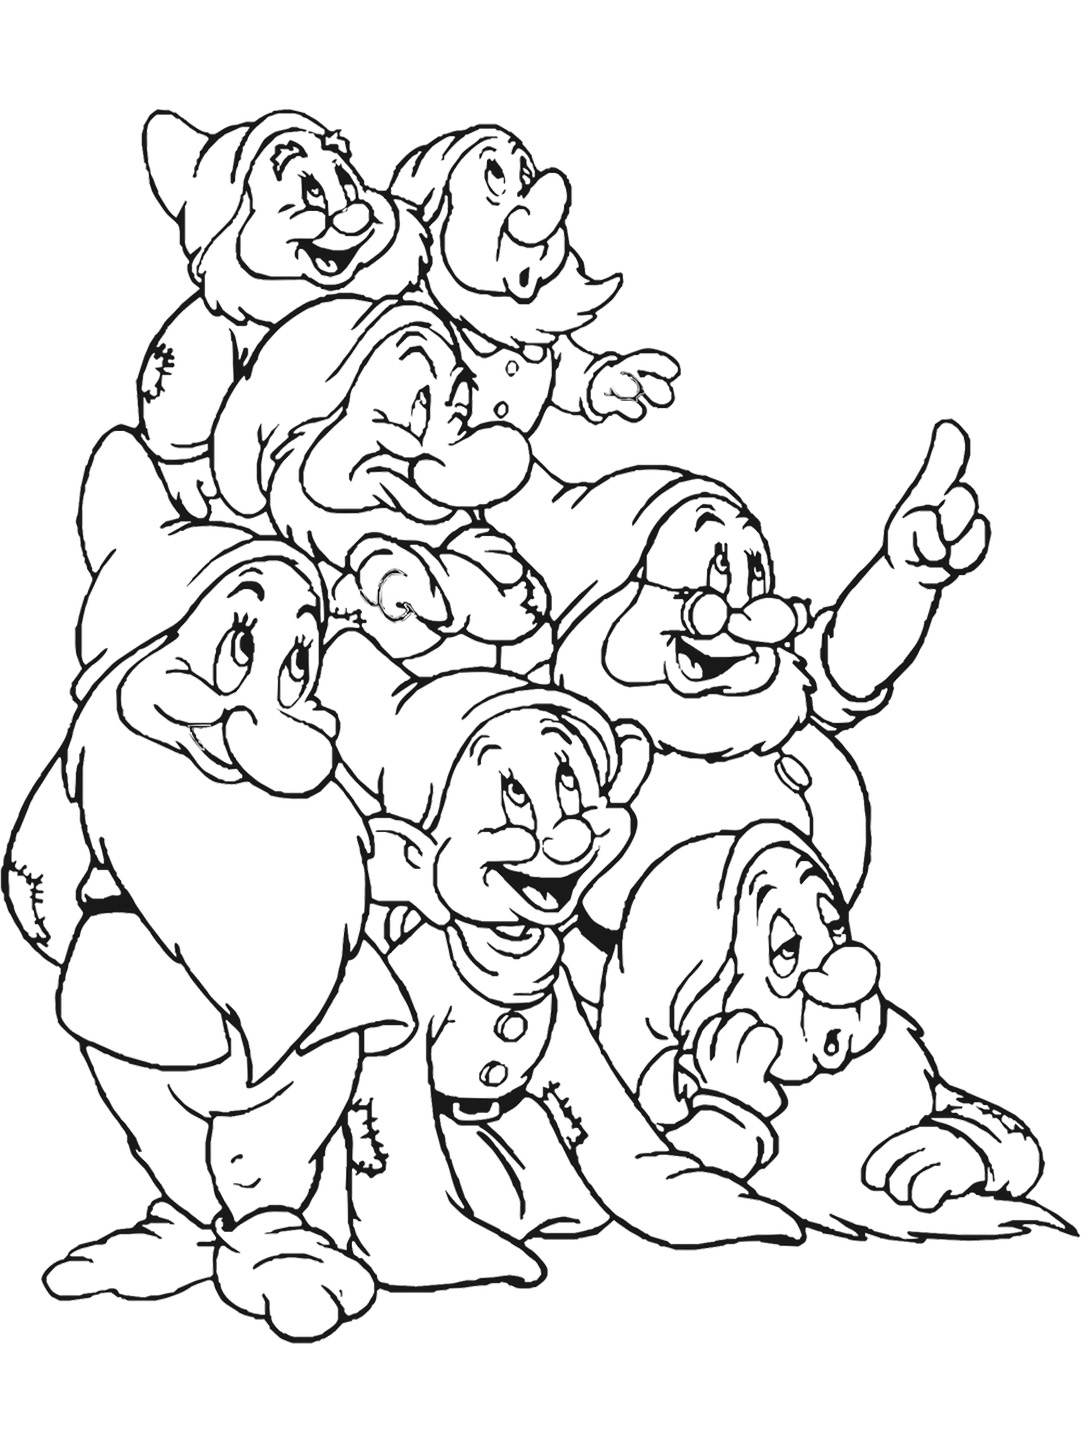 Disney Seven Dwarfs Coloring Pages